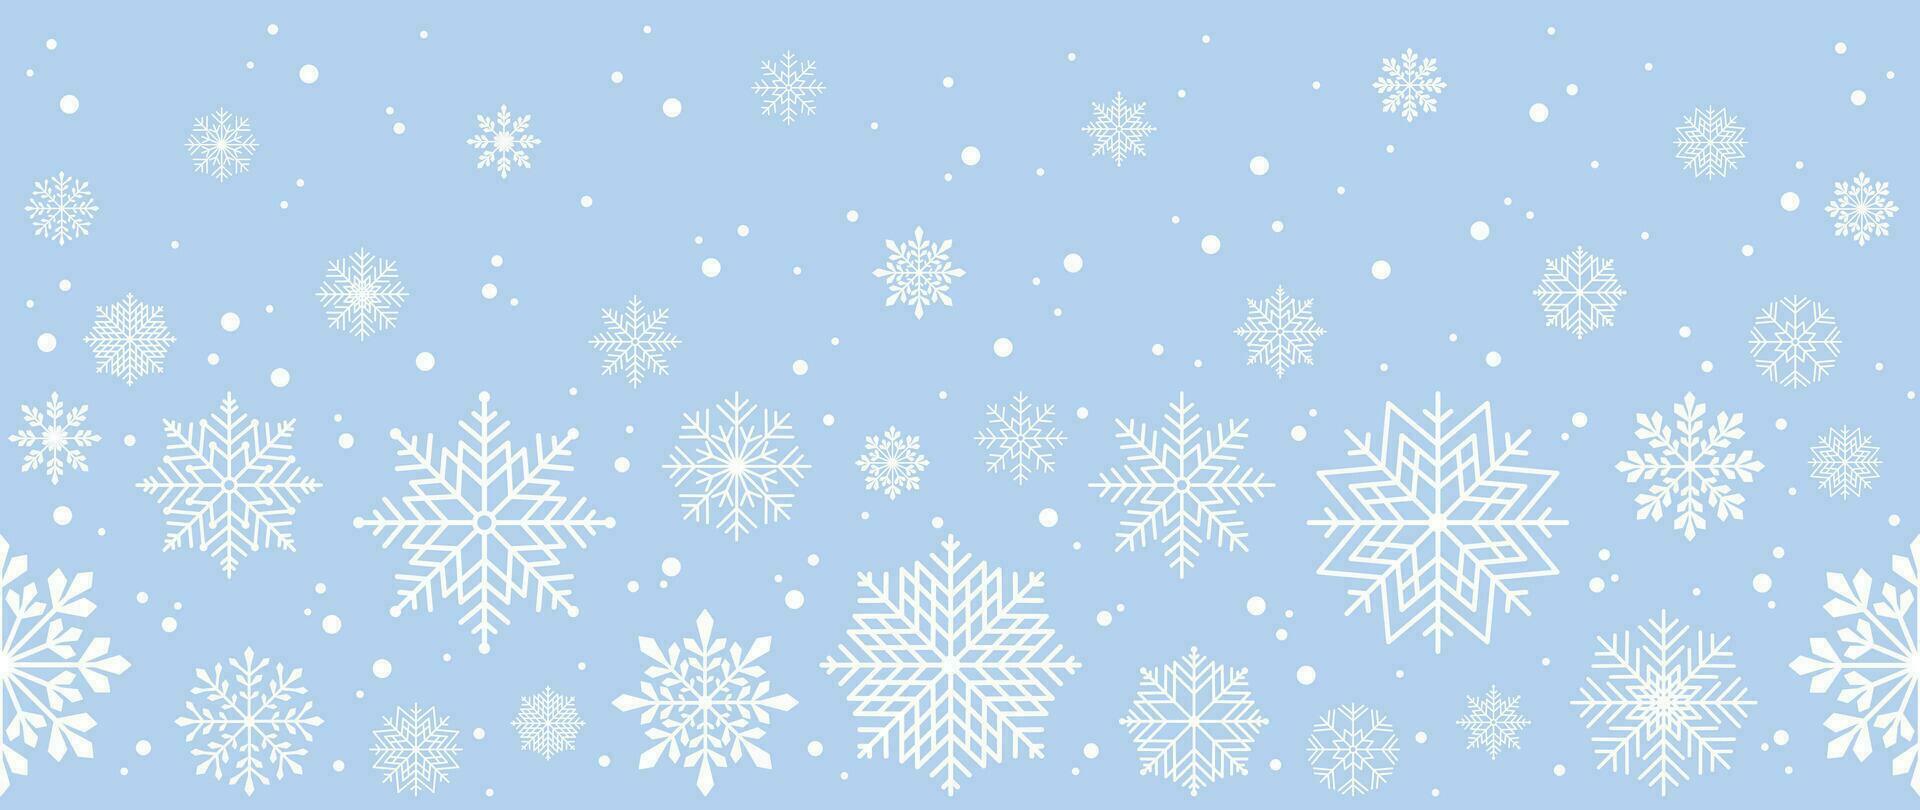 winter achtergrond met sneeuwvlokken en sneeuw. naadloos patroon. vector illustratie voor omslag, banier, poster, web, textiel en verpakking.